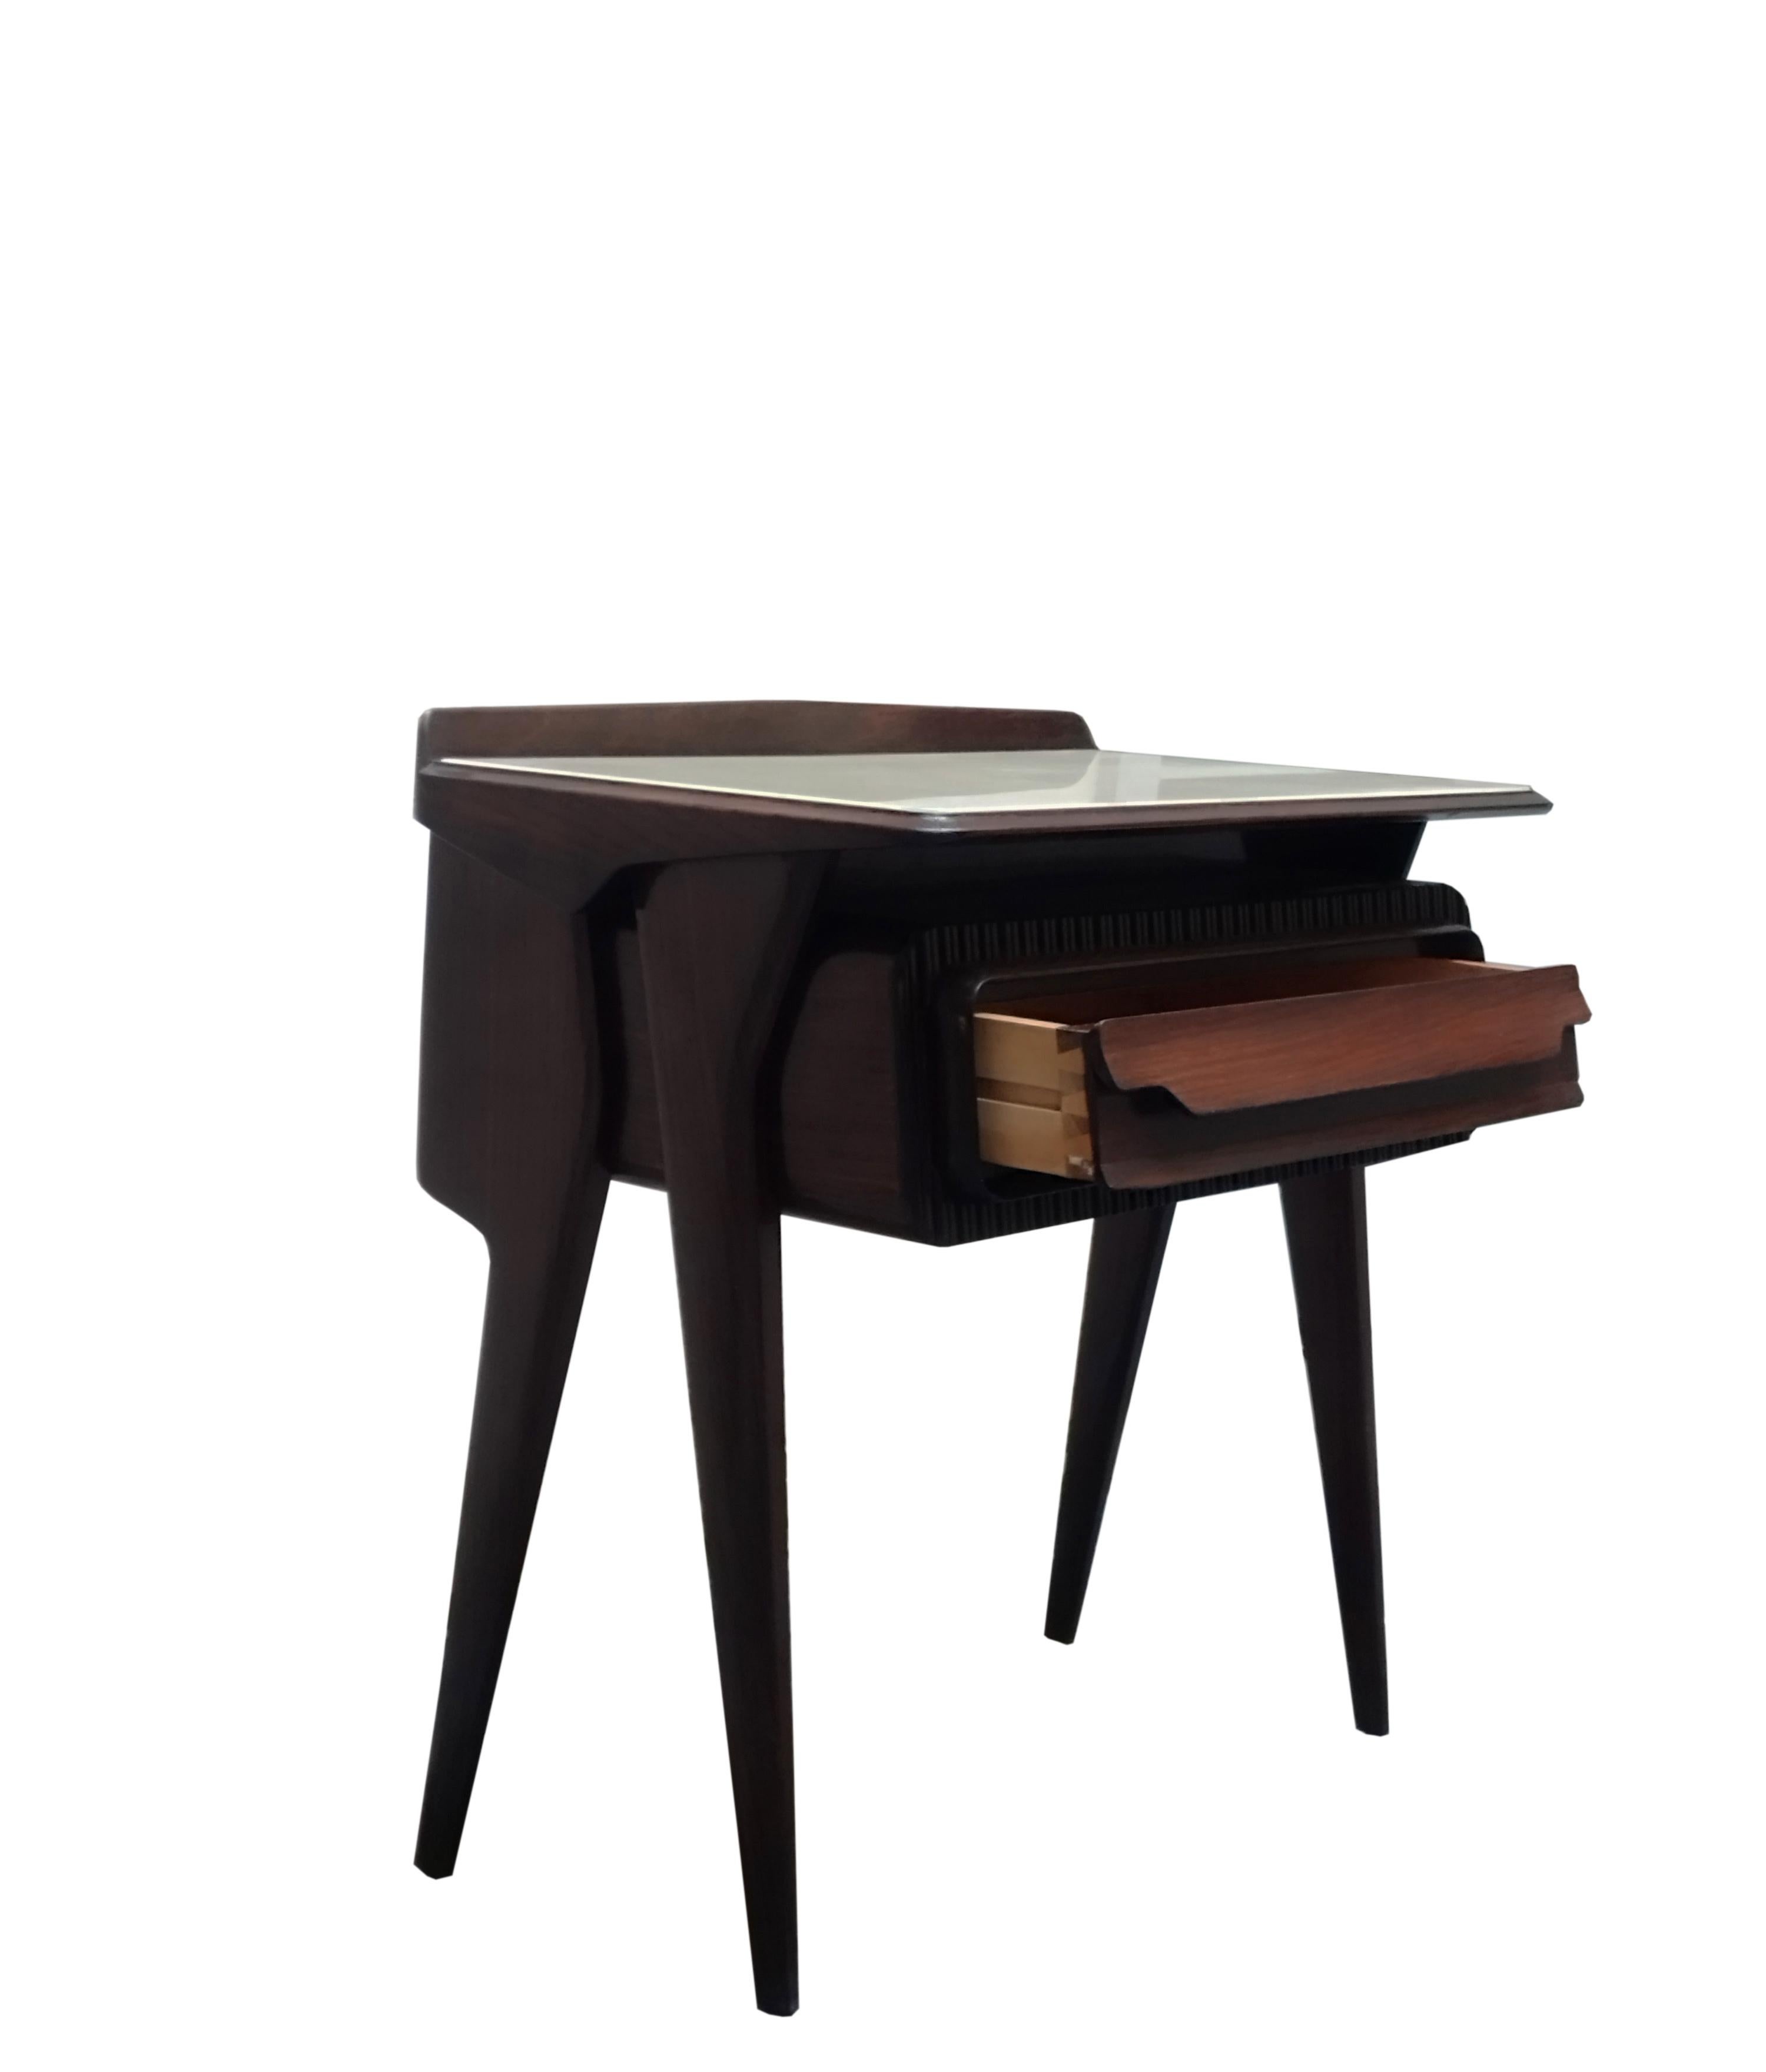 Nachttisch aus Holz, entworfen von Vittorio Dassi in den 1950er Jahren.
 Seine ästhetische Einzigartigkeit liegt in der originellen skulpturalen Gestaltung der Form der Schublade und der seitlichen Stützen sowie der Glasplatte. Wirklich in